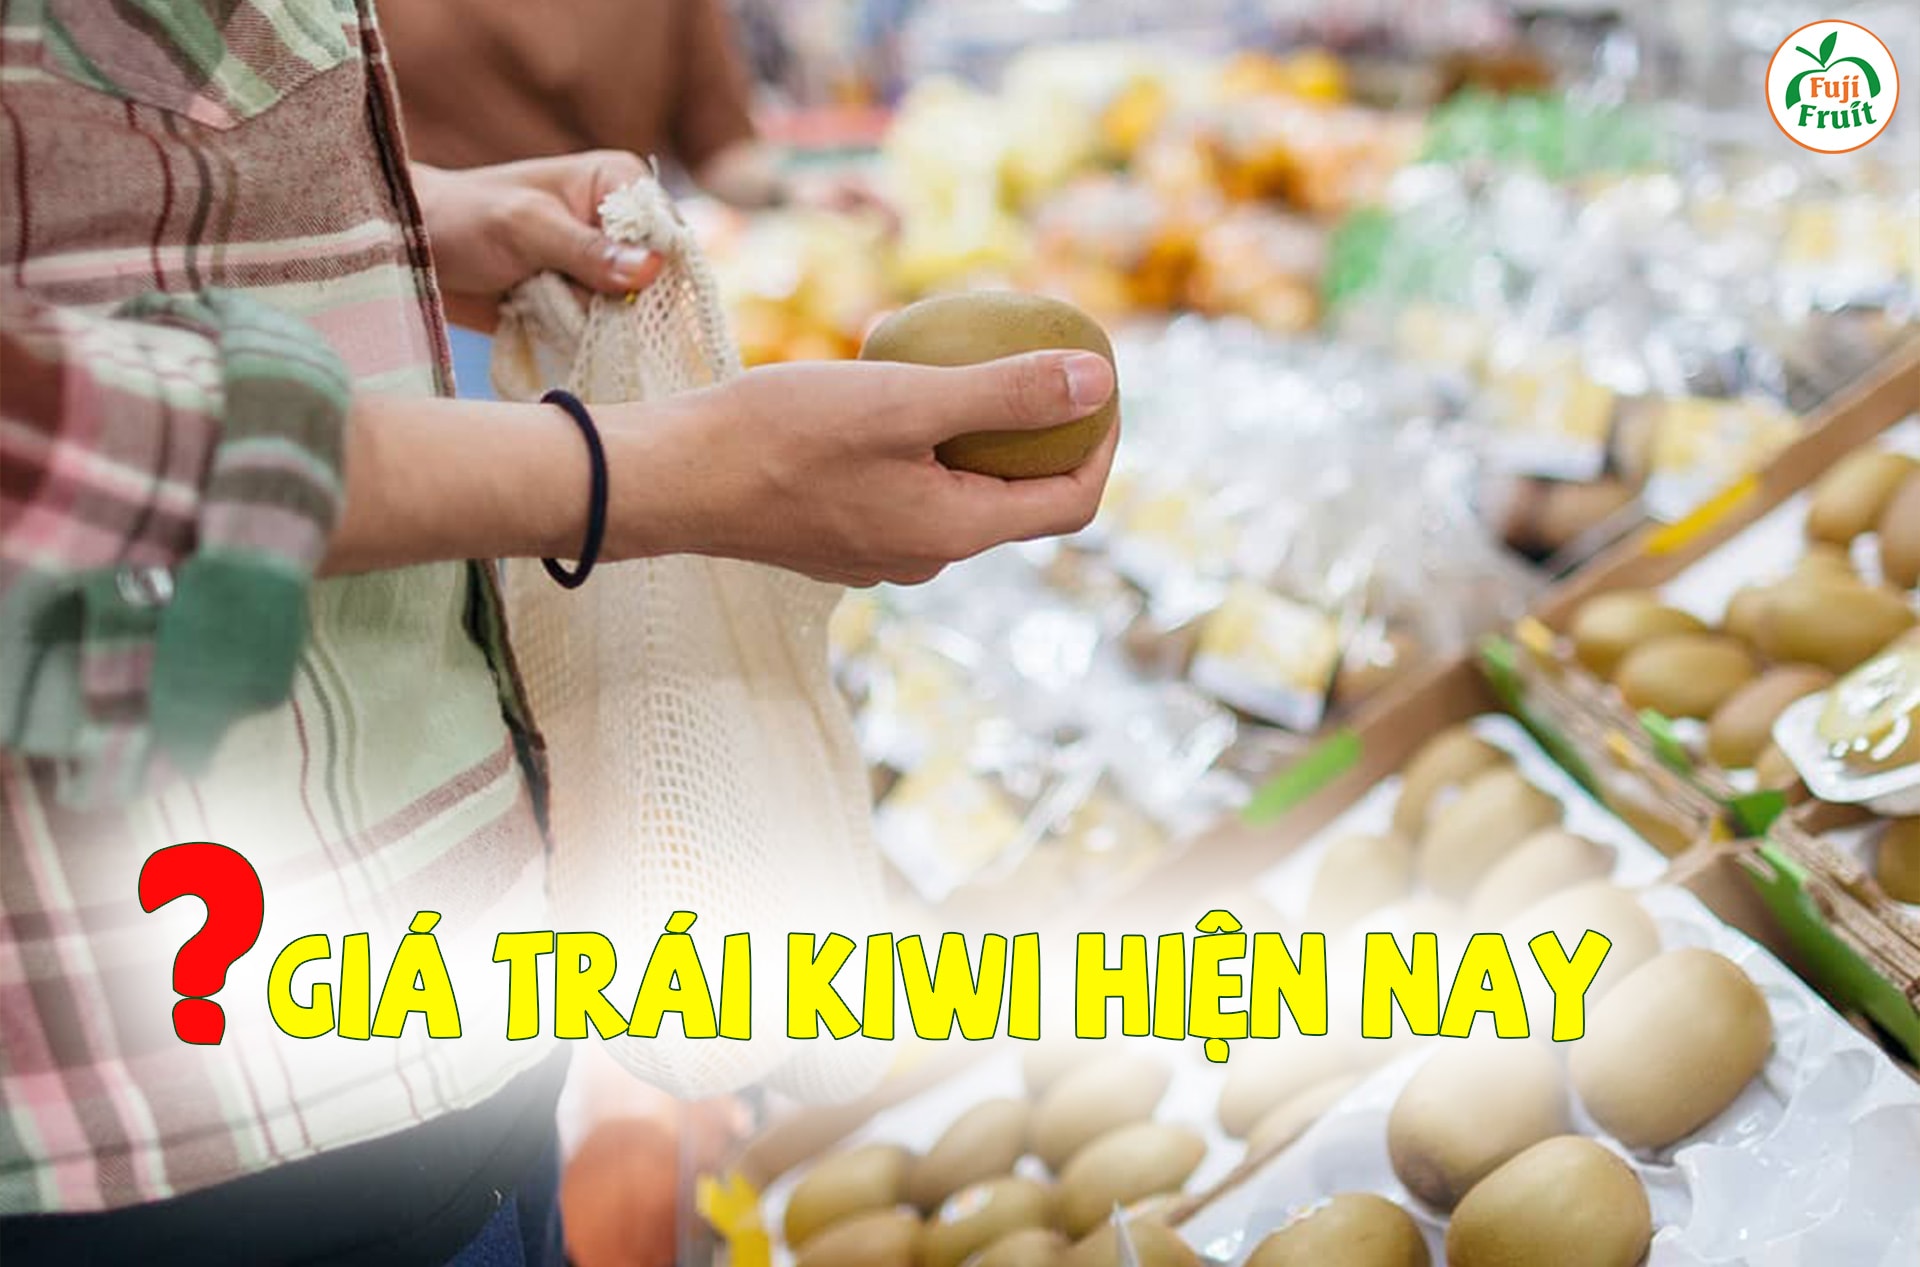 Quả kiwi giá bao nhiêu trên thị trường hiện nay?